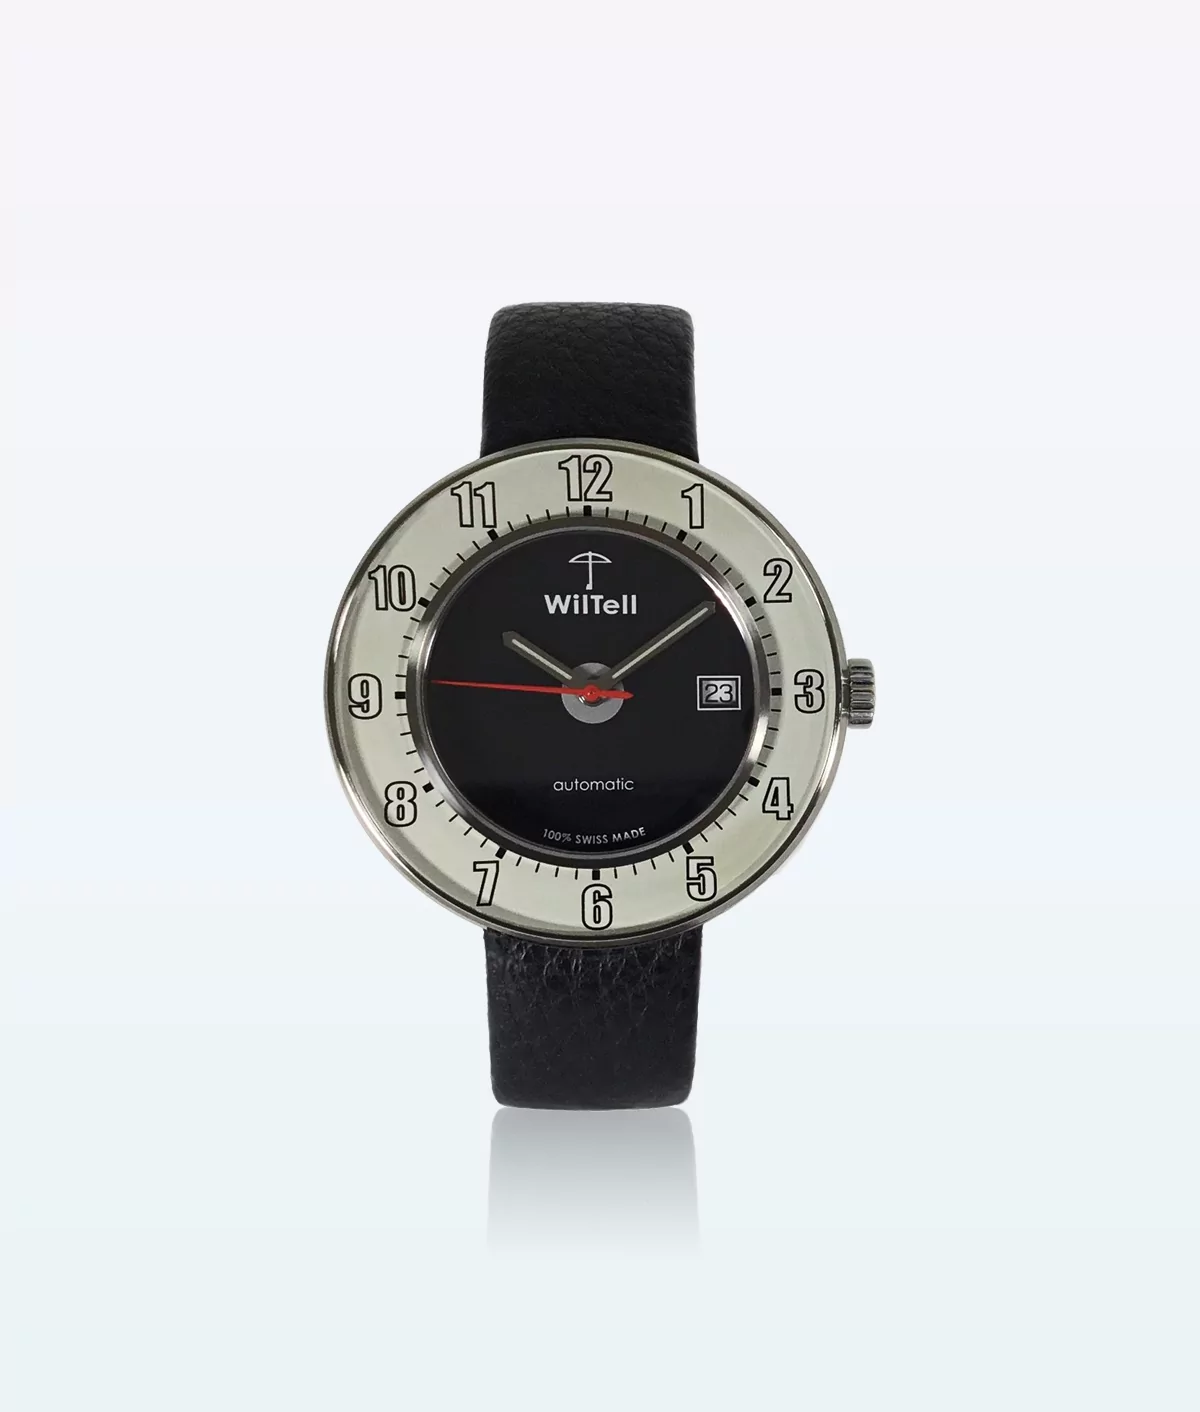 WilTell 100 Swiss Wrist Watch White Black